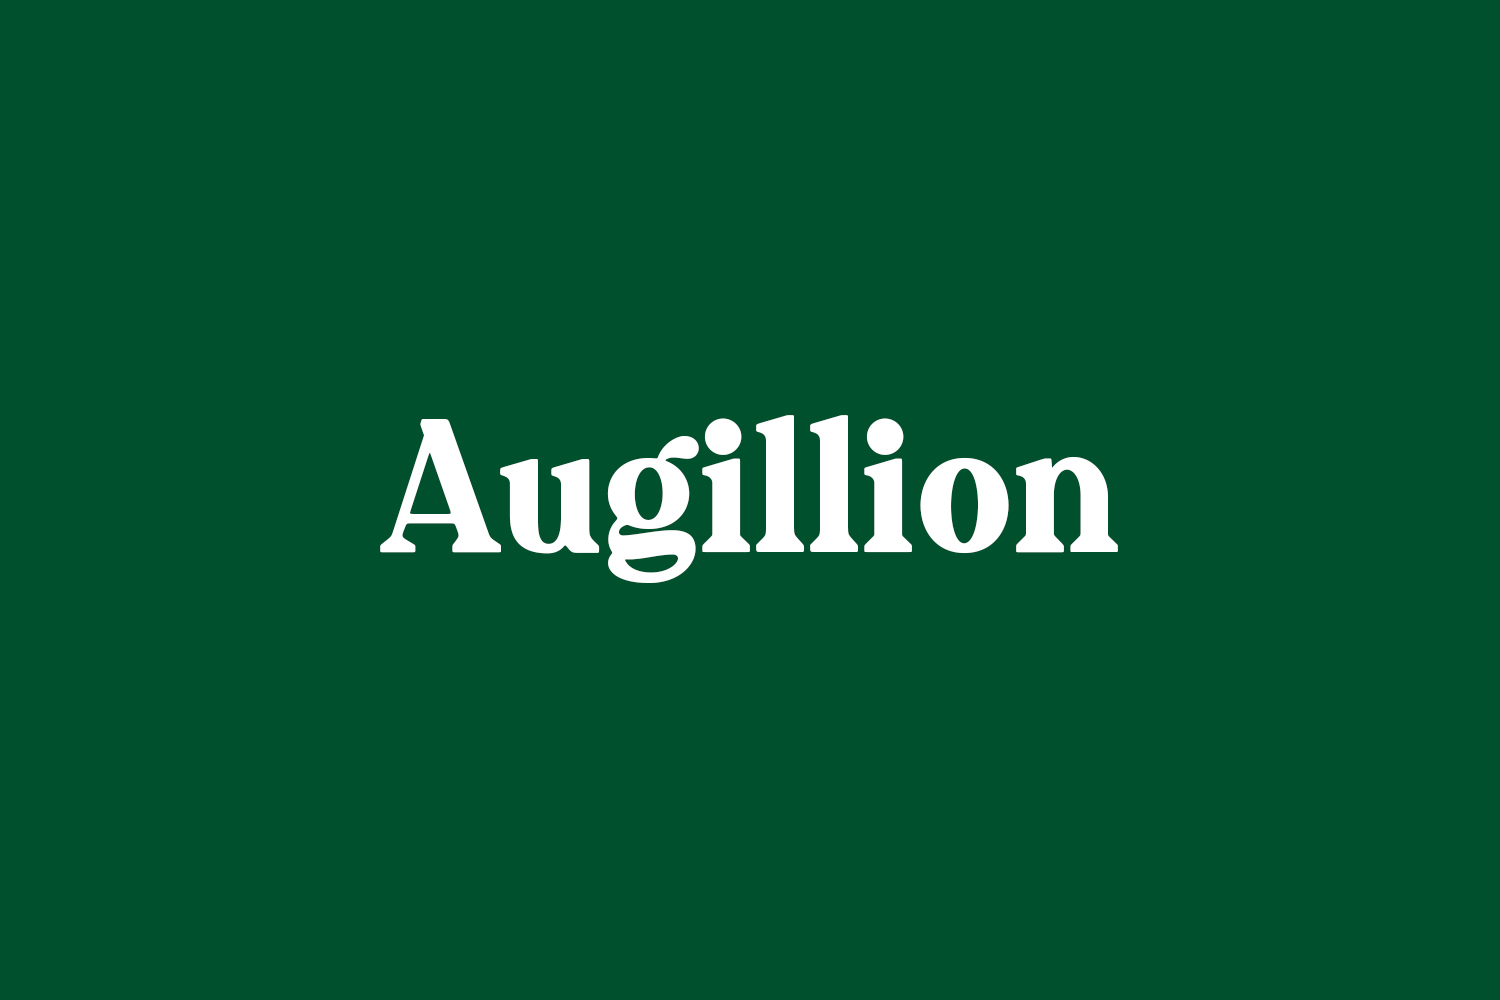 Augillion Free Font